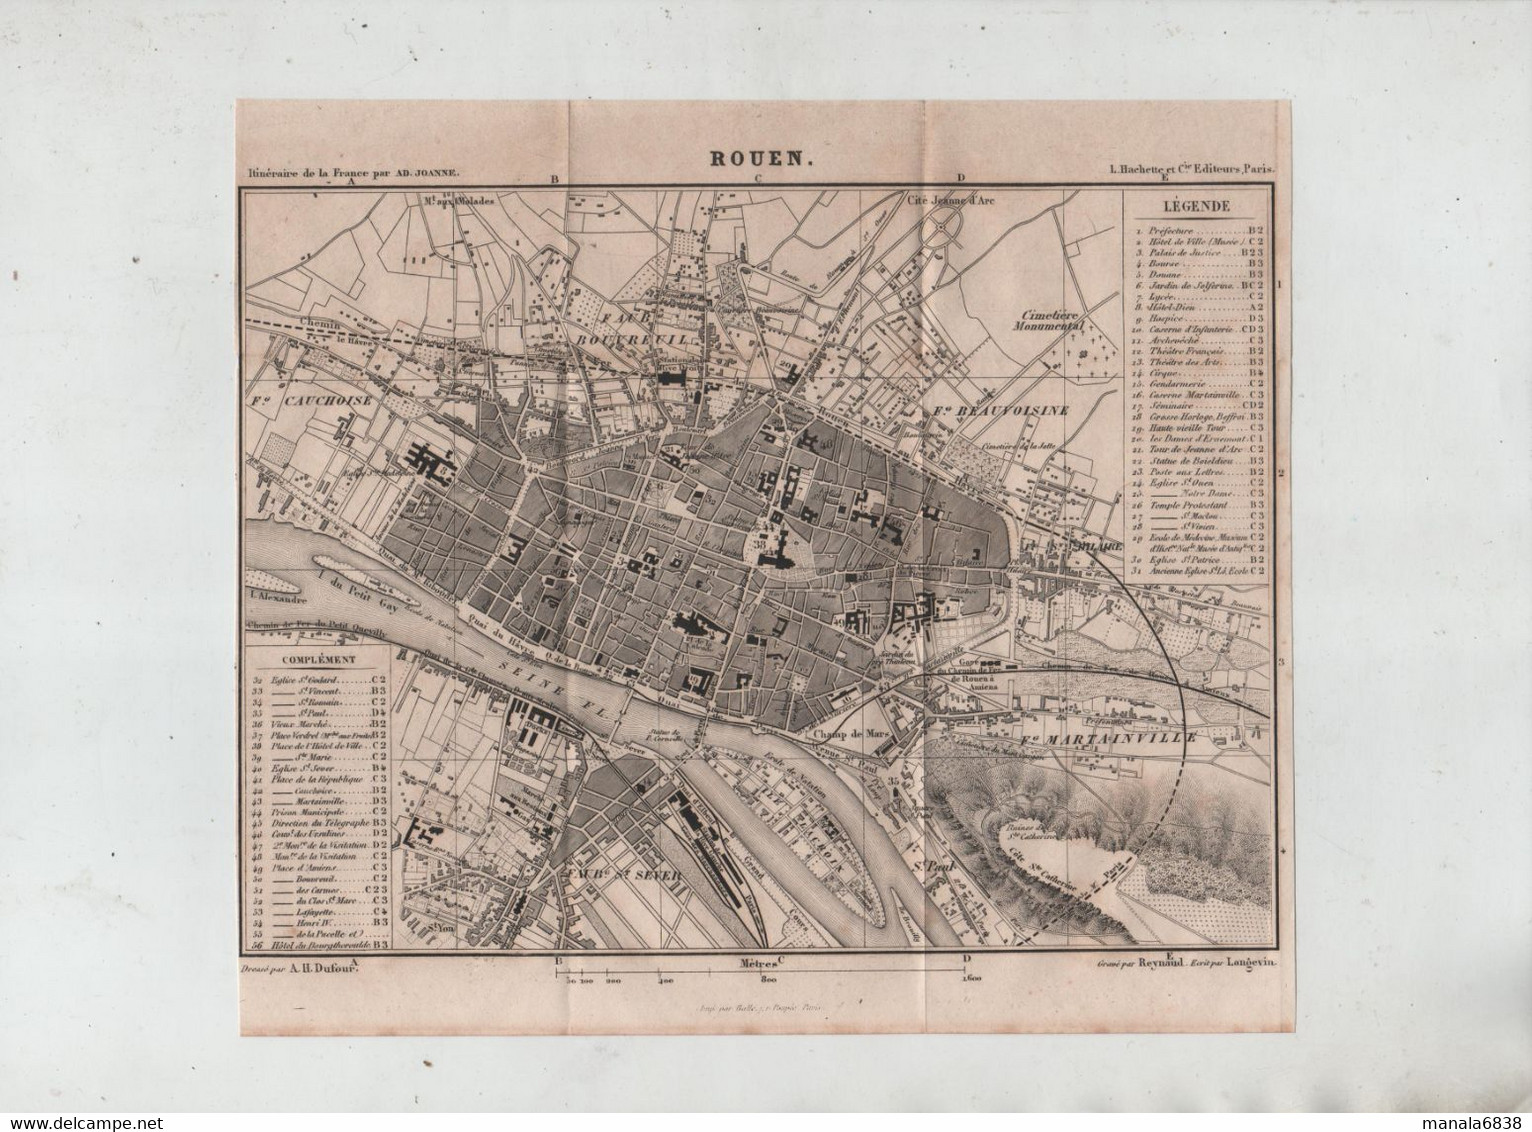 Rouen En 1877 Dufour Gare Voie Ferrée Faubourg Martainville Beauvoisine Bouvreuil Cauchoise Saint Sever Reynaud - Autres Plans